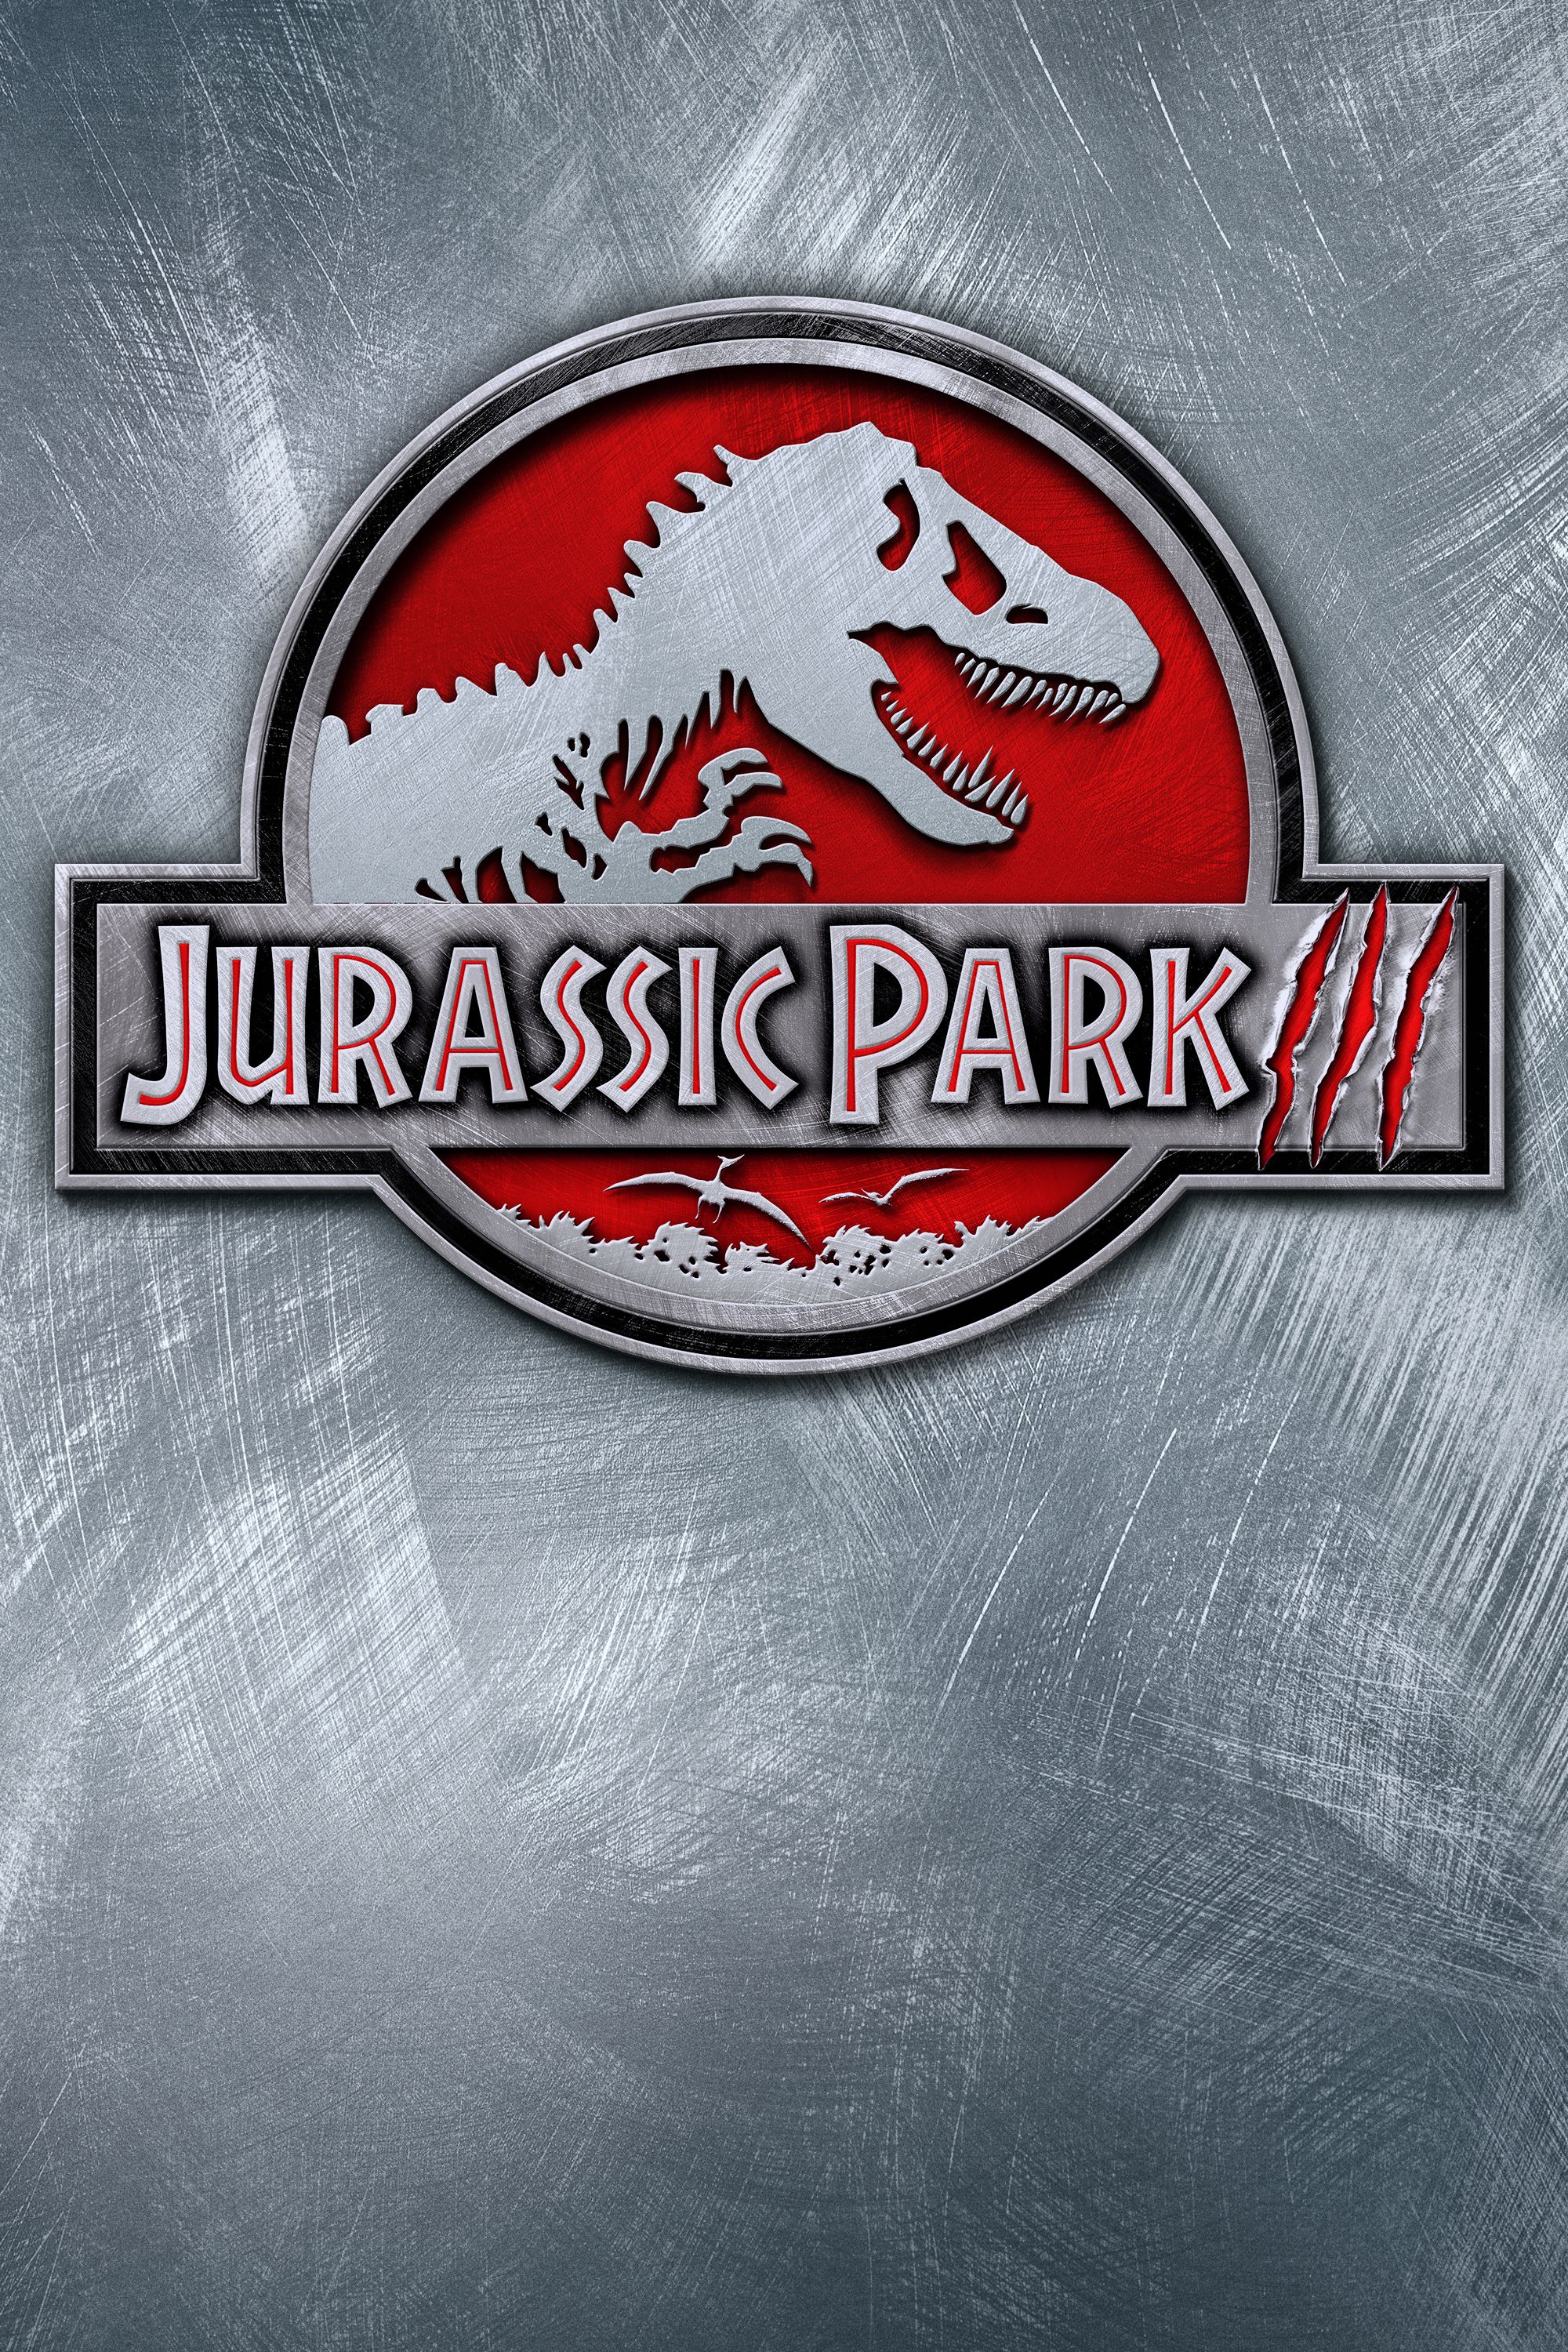 jurassic park 4 free online movie